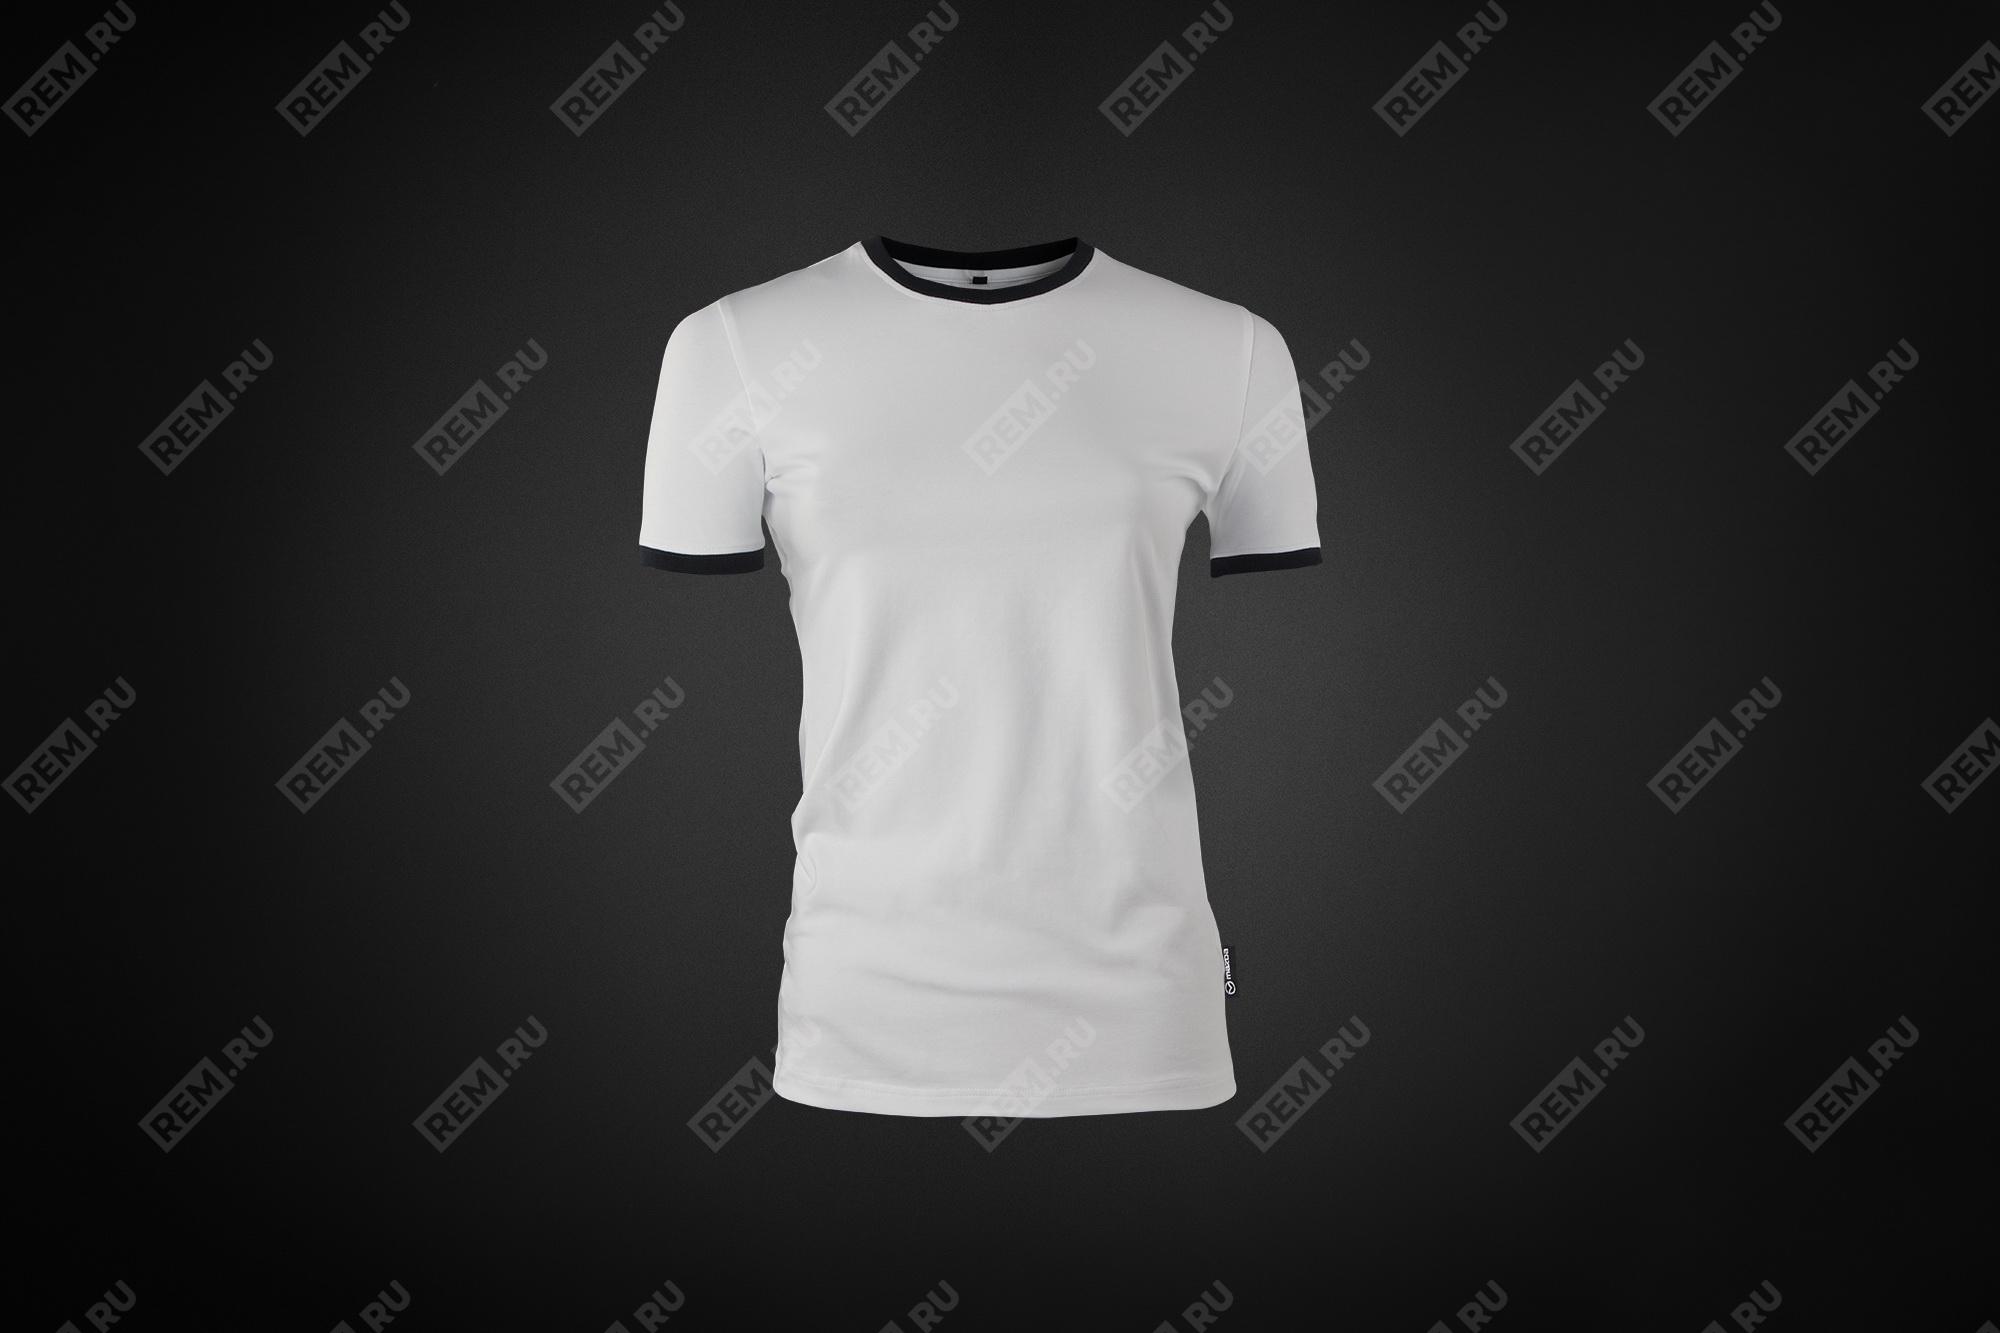  8300771196  футболка женская, размер xs (фото 1)